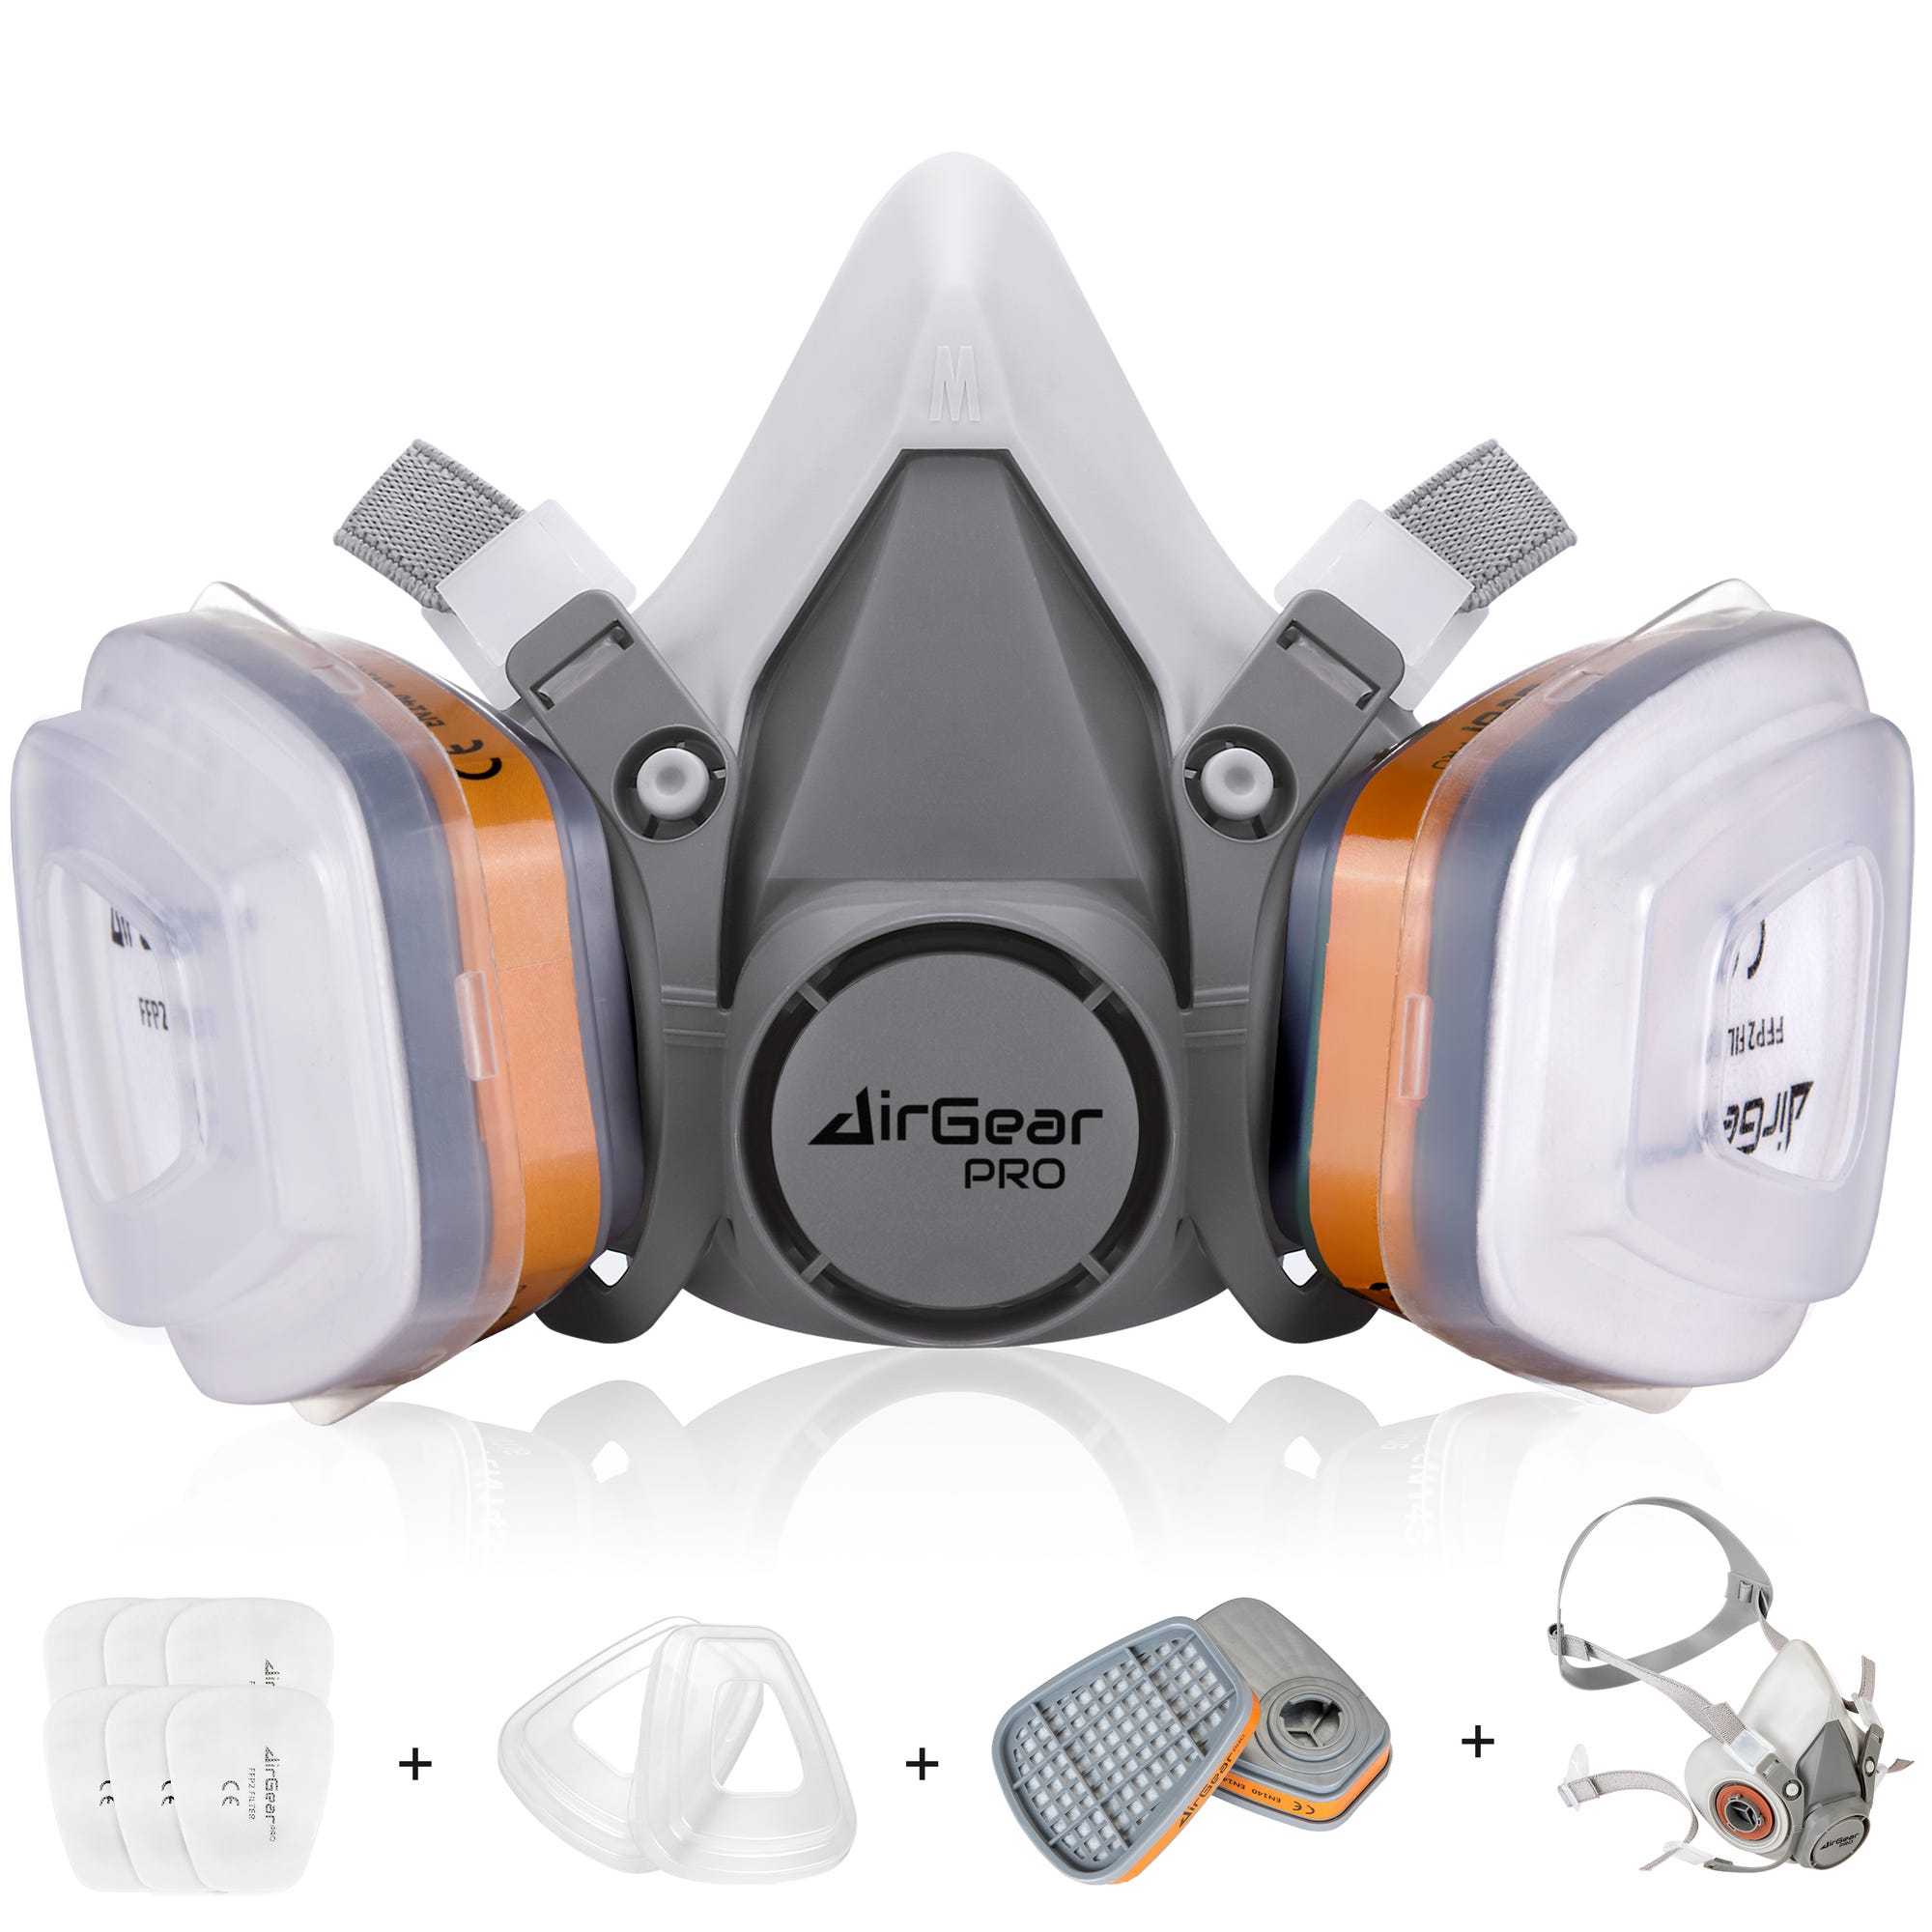 AirGearPro M-500 Masque de Protection Respiratoire Réutilisable, Anti poussière, Anti gaz avec Filtres, Idéal Peinture 0